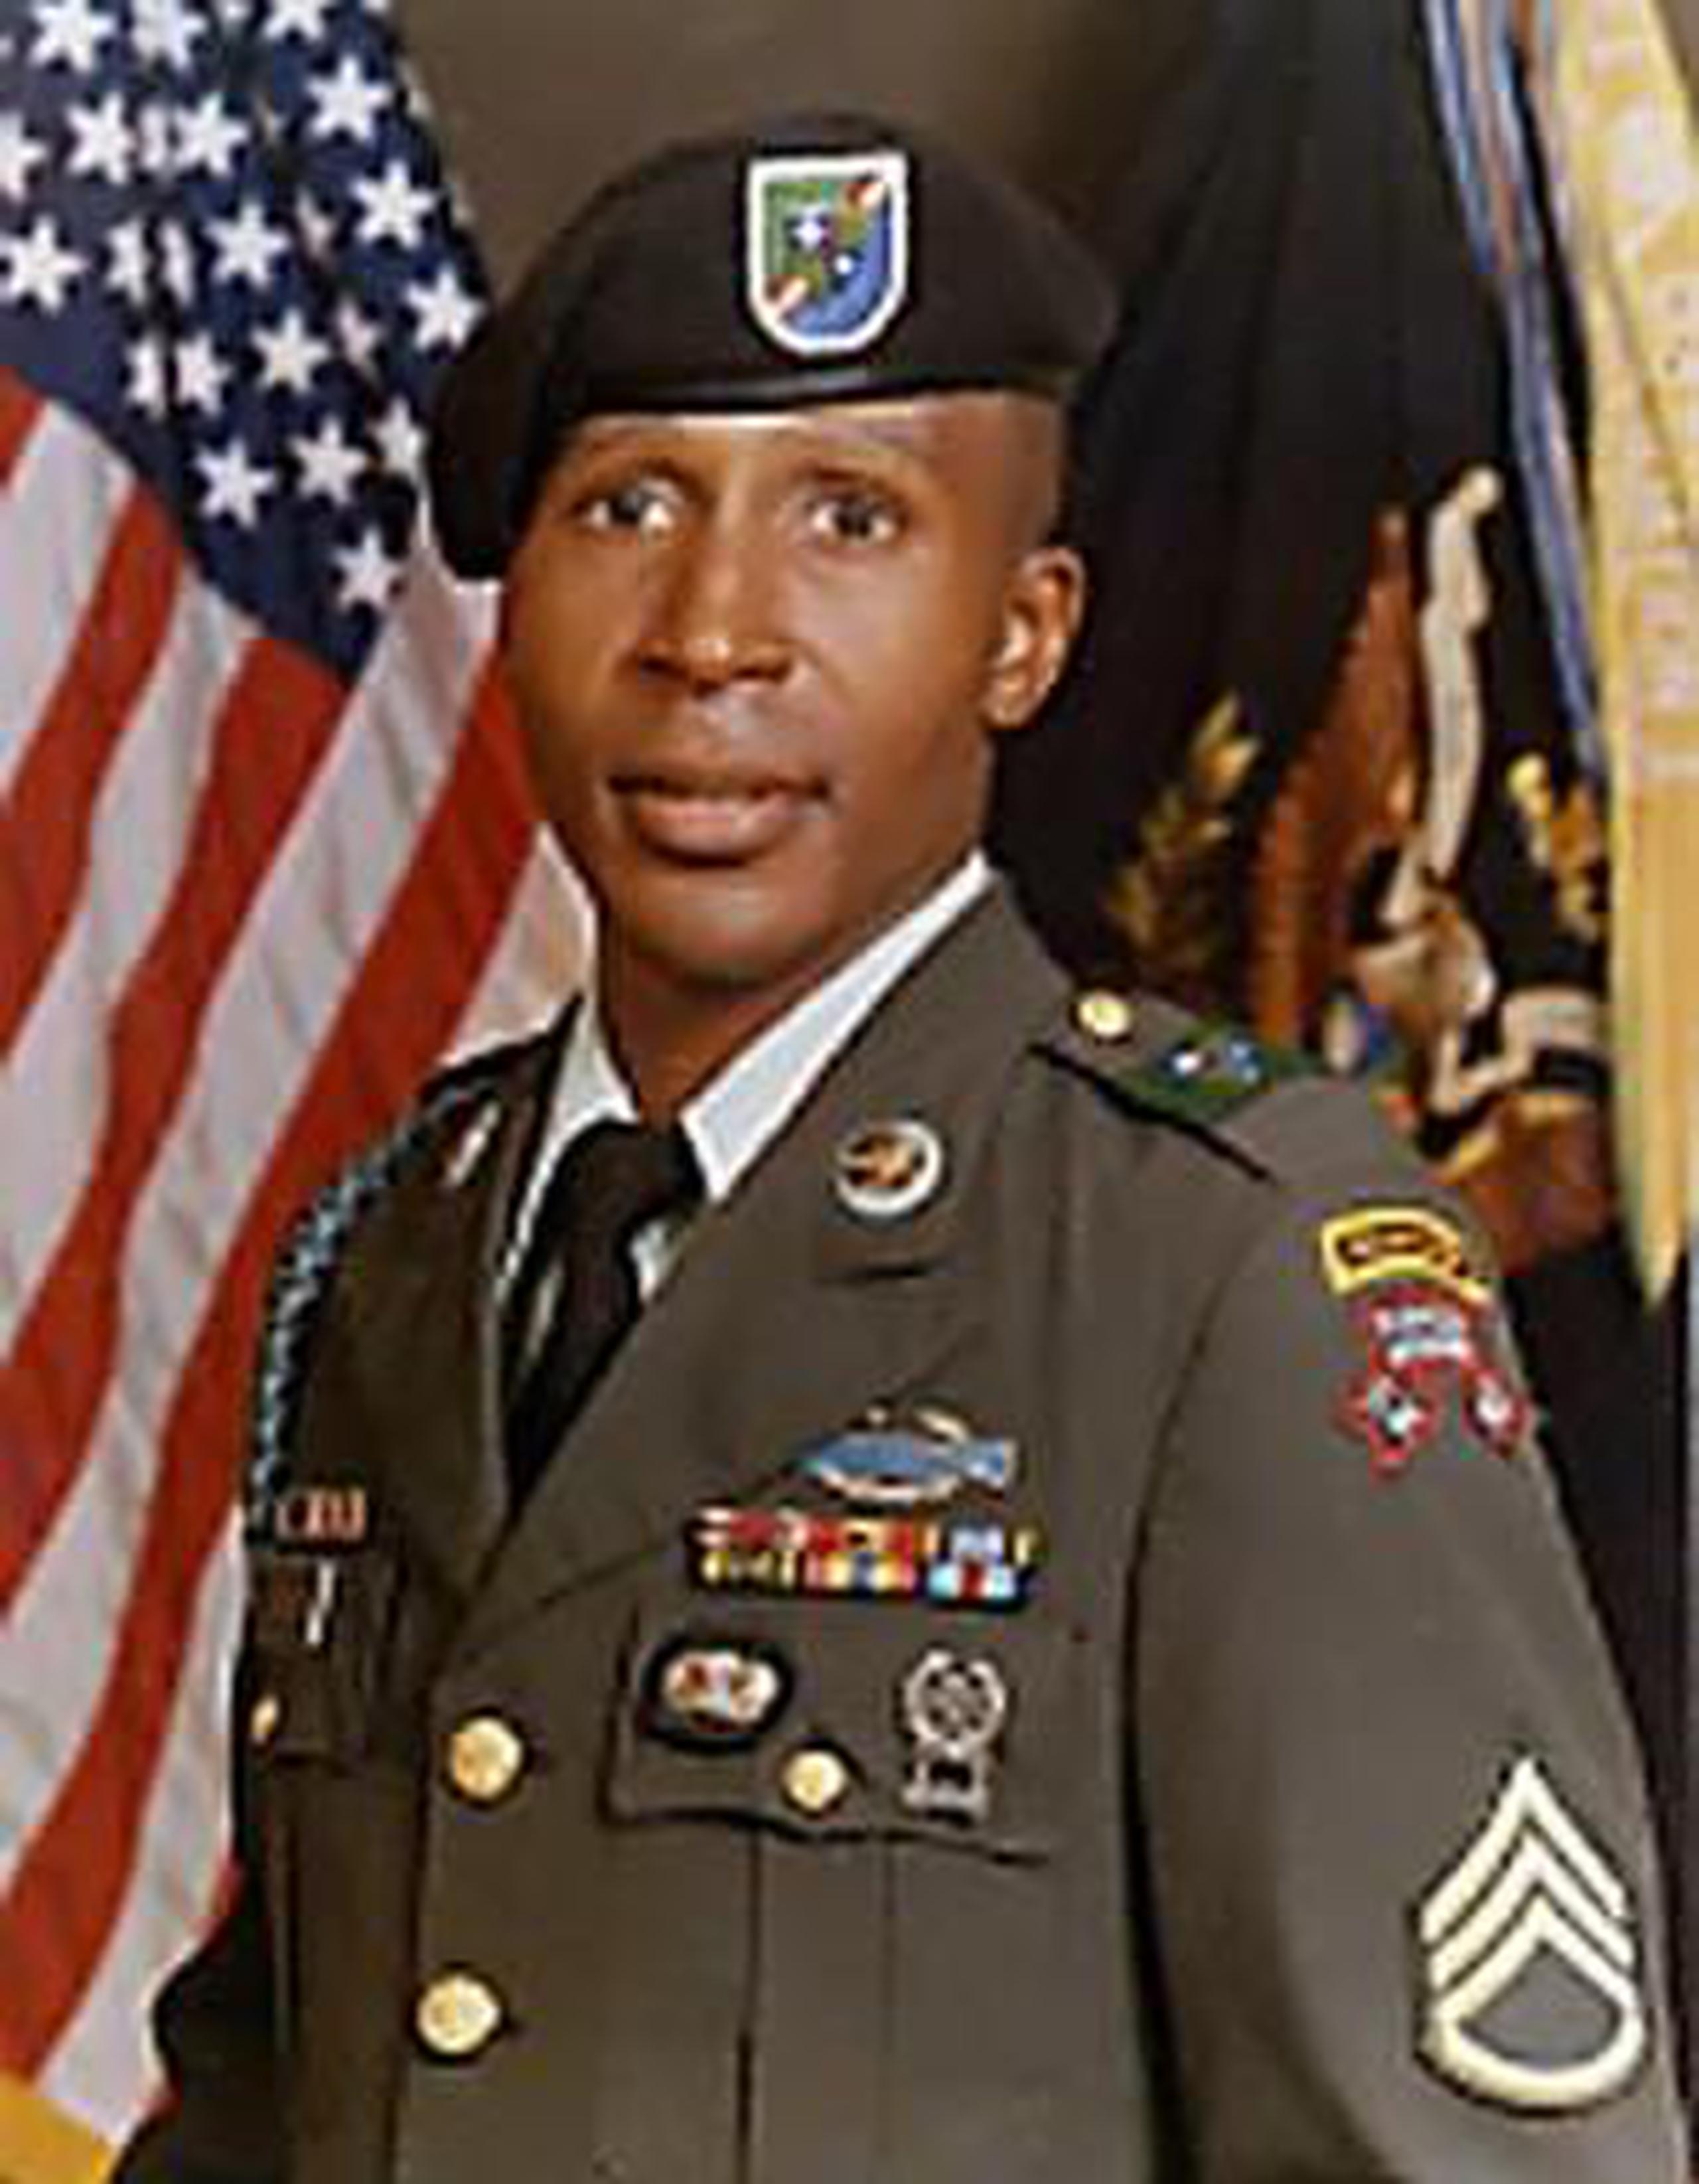 La ejecución más reciente a cargo del gobierno federal fue la de Louis Jones en 2003, condenado por secuestrar, violar y asesinar a una joven soldado. (Captura)